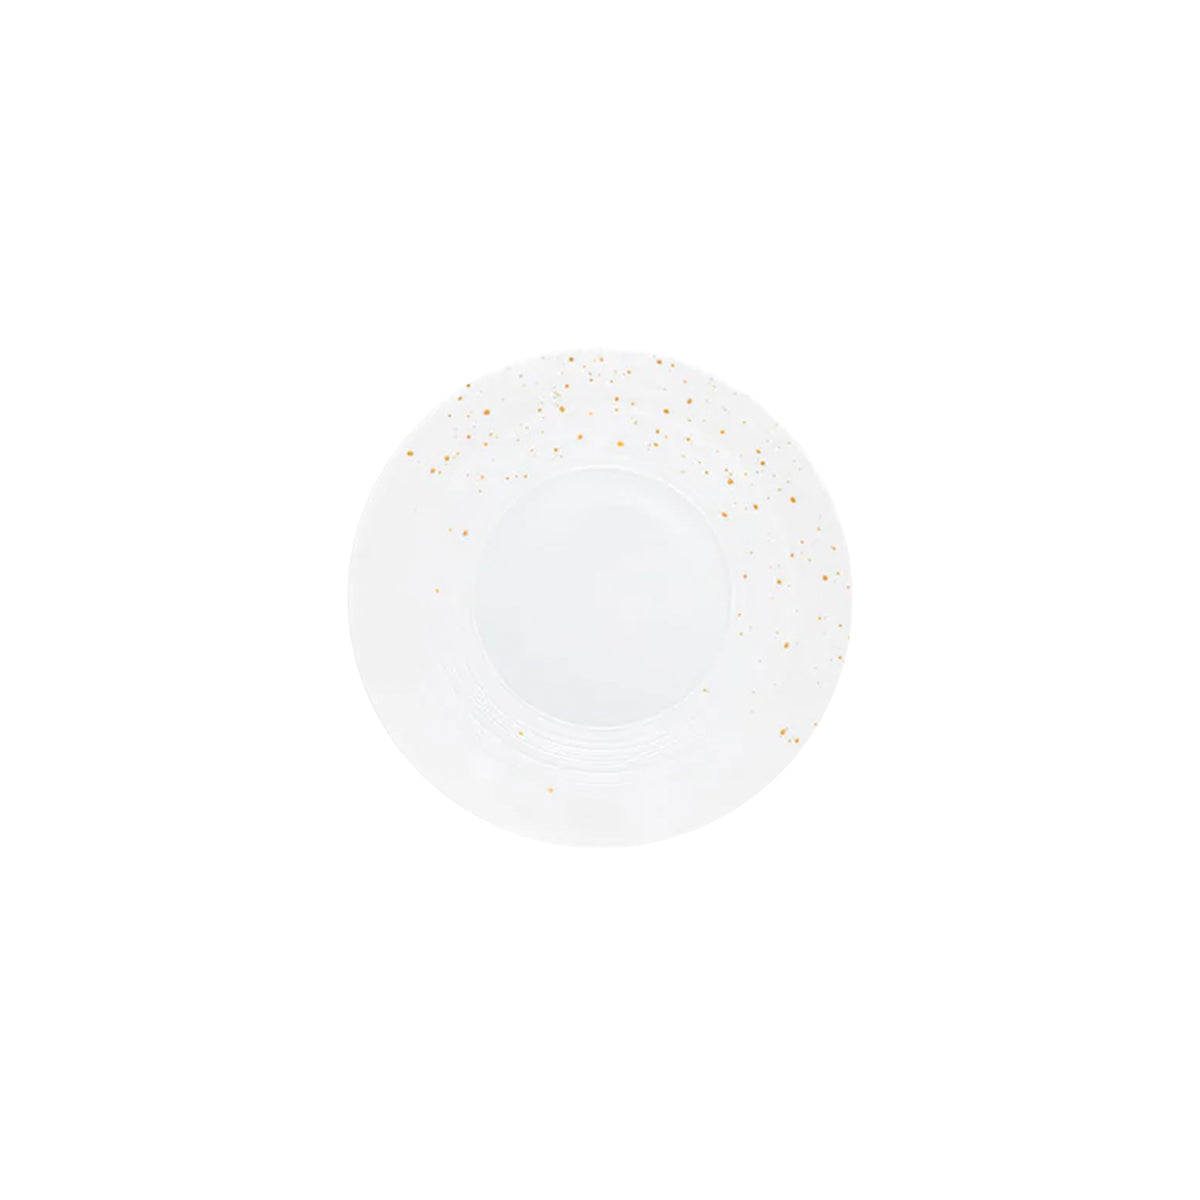 Lutèce by Achille Salvagni - Bread plate